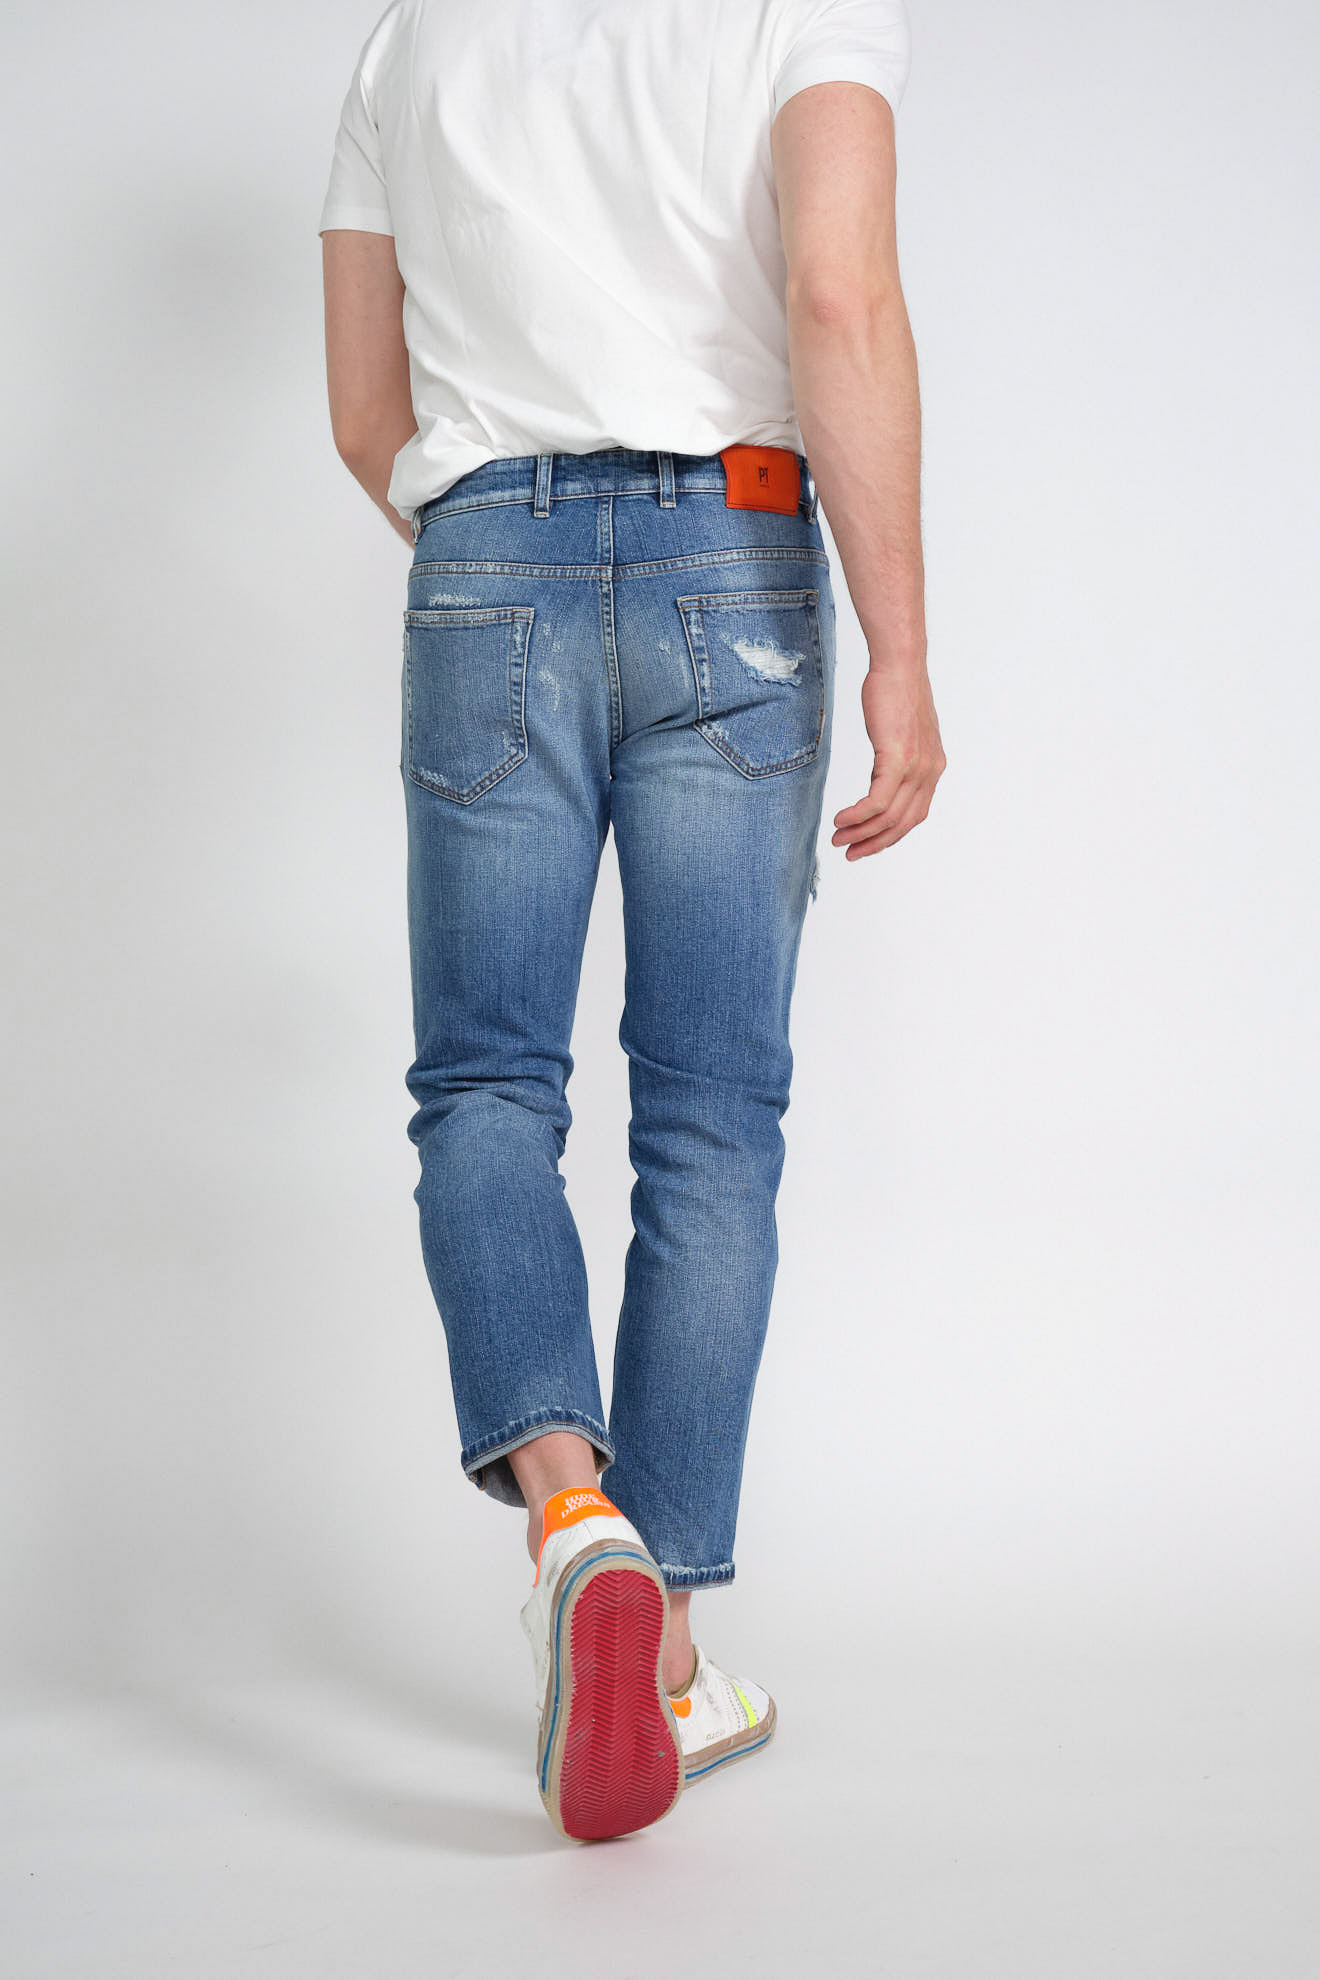 pt Torino jeans denim destroyed red detail cotton model back